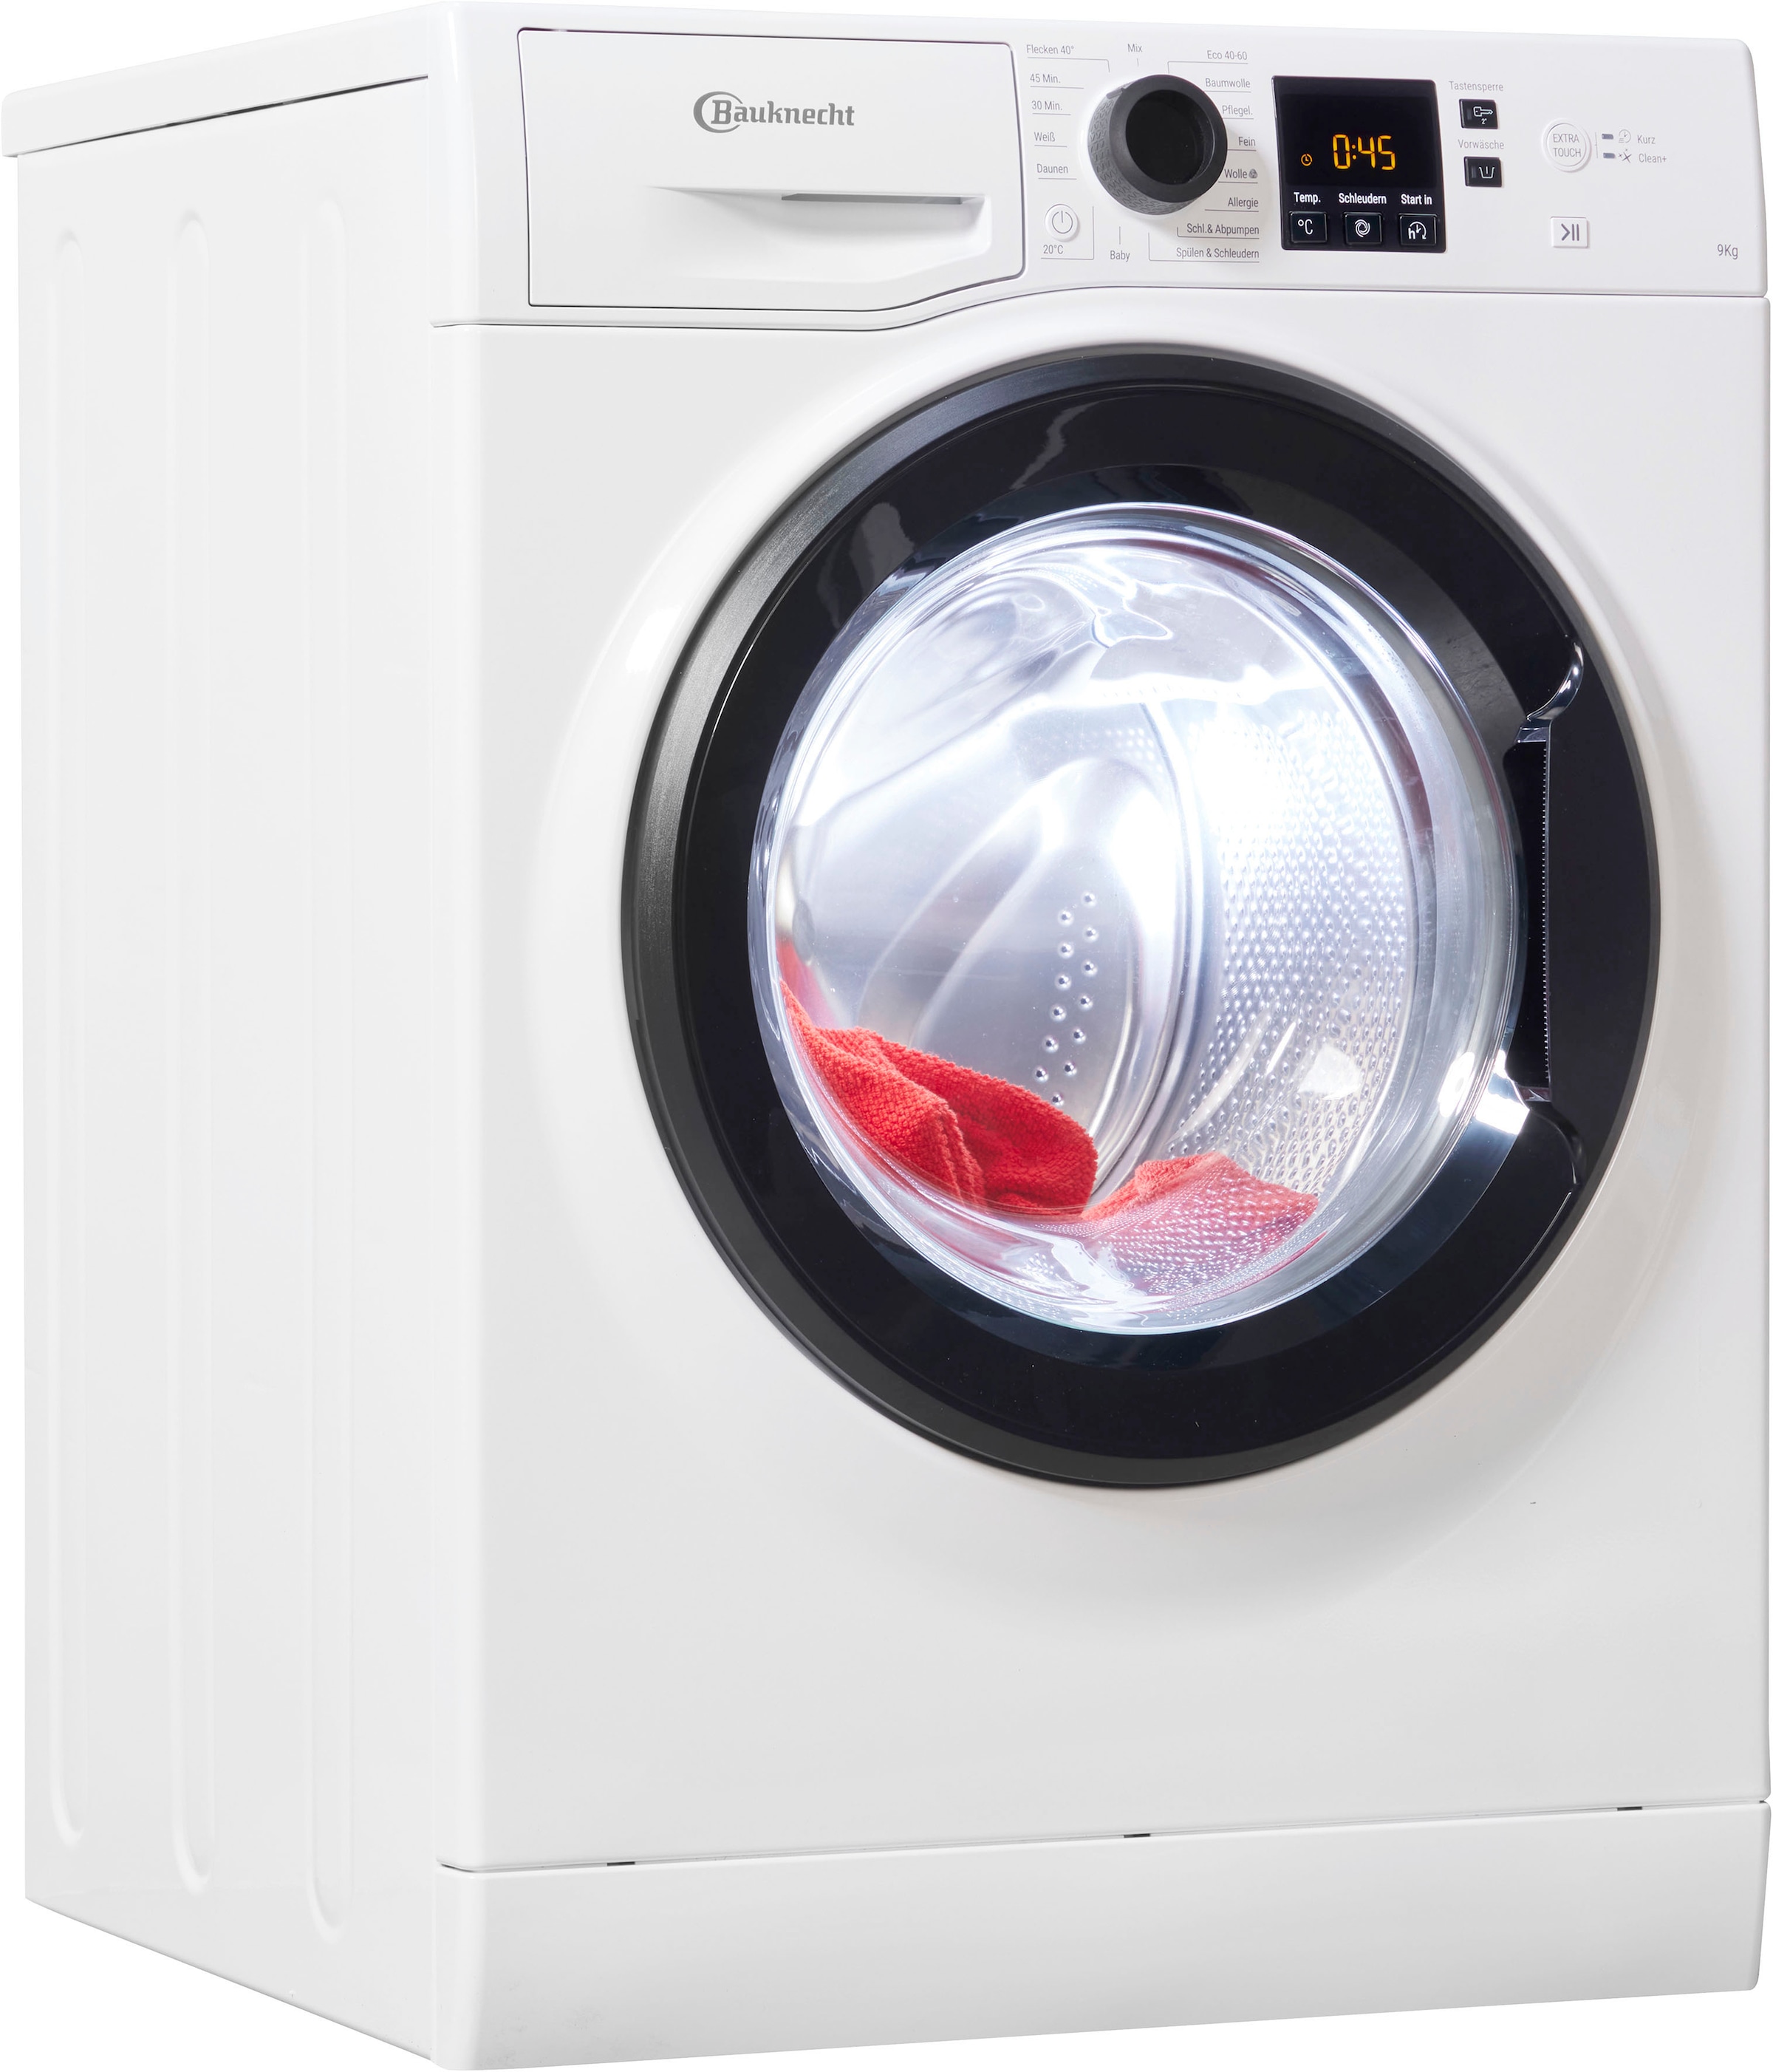 BAUKNECHT Waschmaschine, Super Eco Shop Jahre 1400 A, im U/min, 9 OTTO Online 945 Herstellergarantie 4 jetzt kg